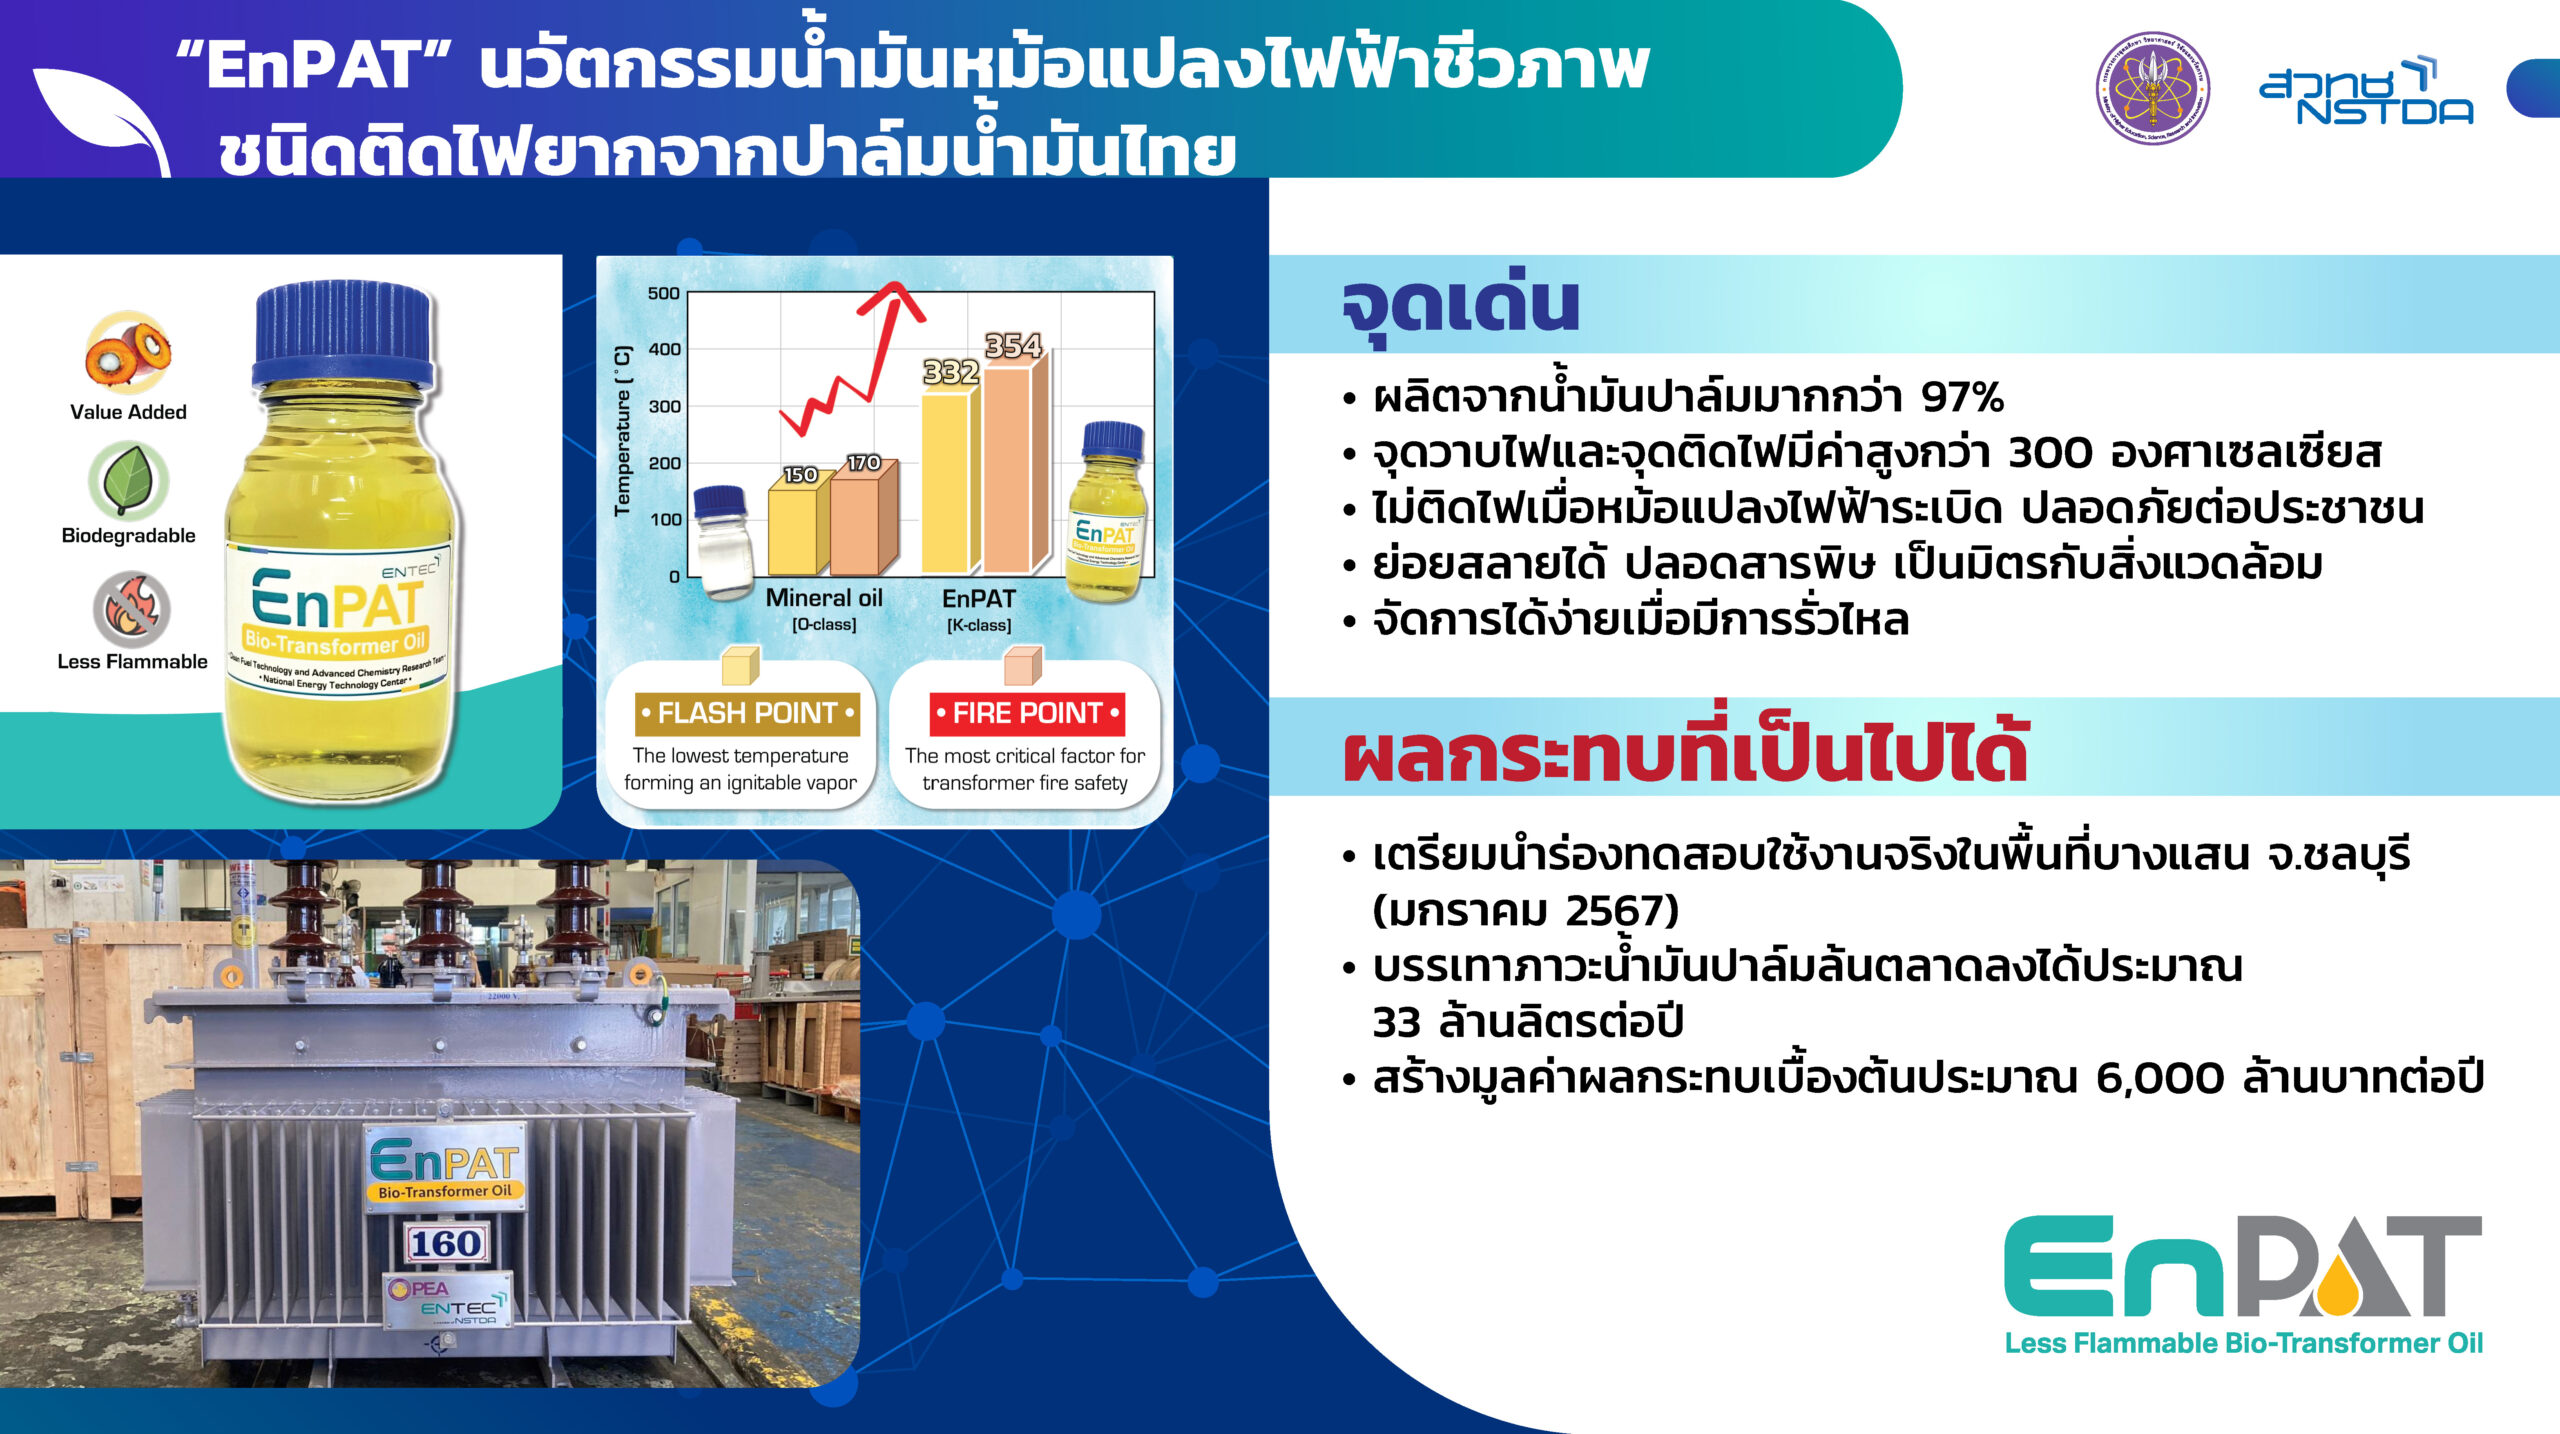 “EnPAT” น้ำมันหม้อแปลงไฟฟ้าชีวภาพชนิดติดไฟยากจากปาล์มน้ำมันไทย 